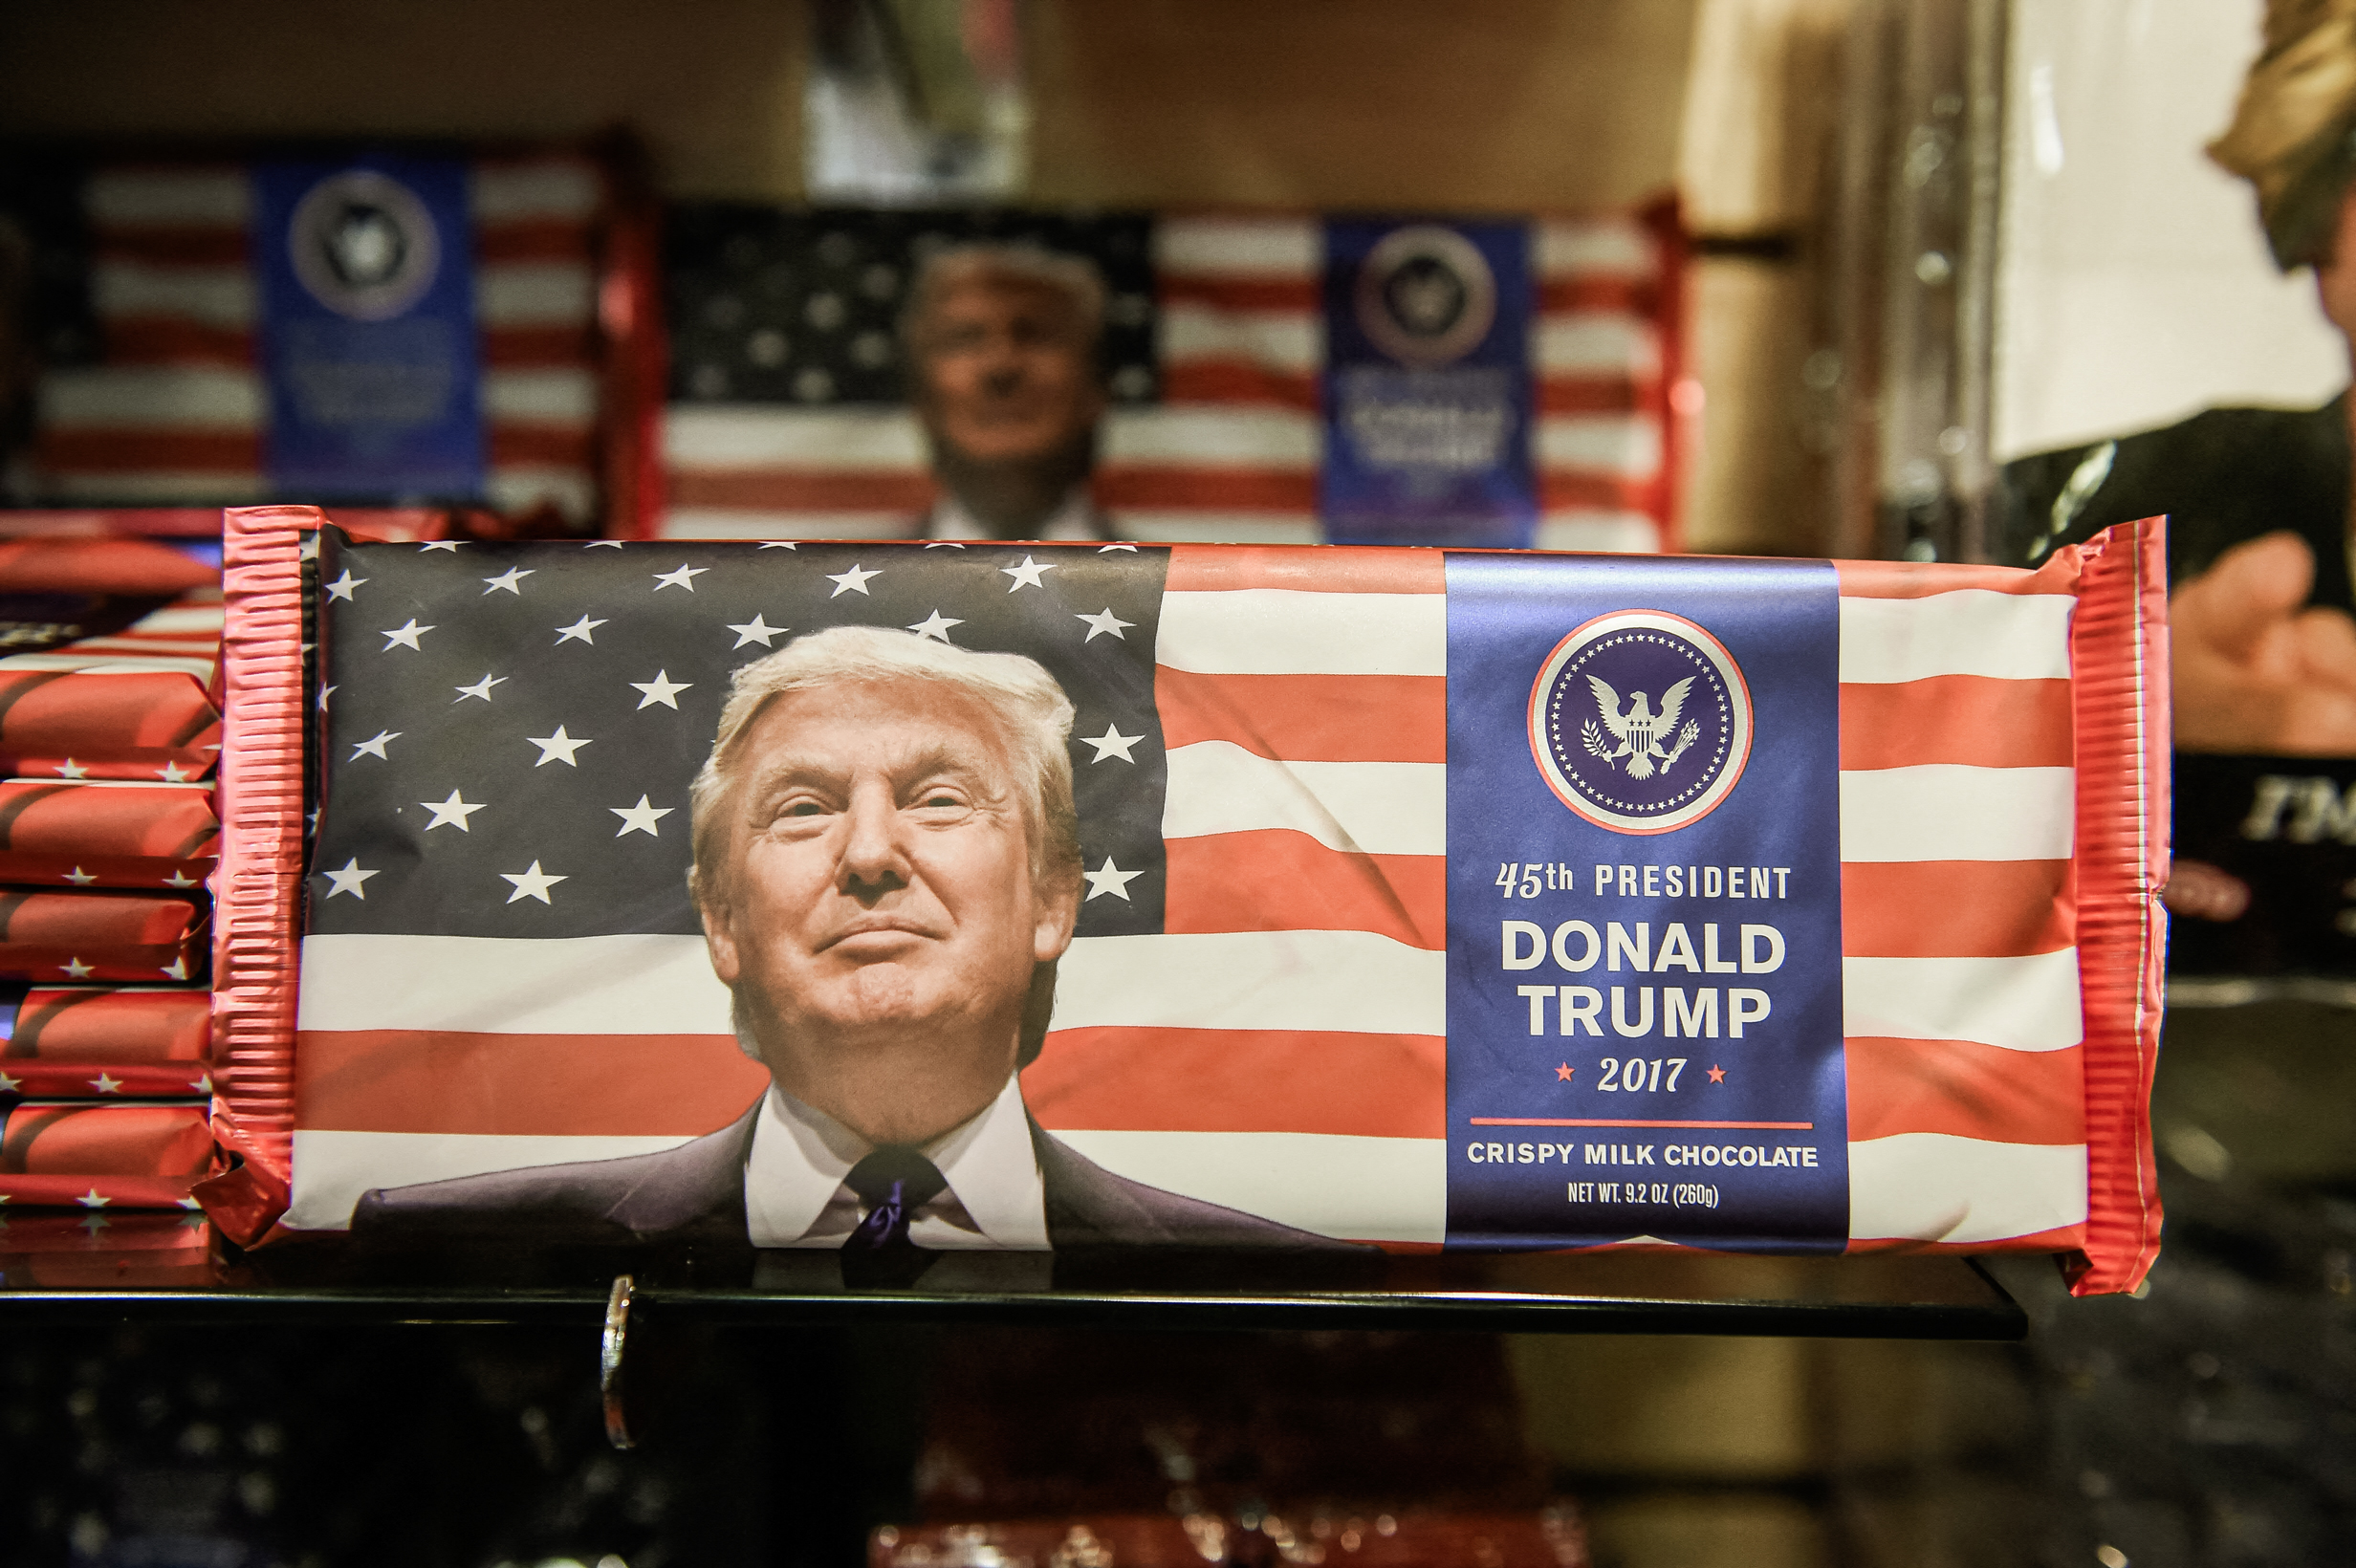 (Ảnh trên) Hàng hóa mang thương hiệu Trump được trưng bày tại một cửa hàng trong Trump Tower ở Thành phố New York, vào ngày 04/01/2022. (Ảnh dưới) Những thanh sô cô la mang thương hiệu Donald Trump được bán trong một cửa hàng quà tặng một ngày trước ngày nhậm chức của ông Trump ở Hoa Thịnh Đốn, vào ngày 19/01/2017. (Ảnh: Spencer Platt/Getty Images, Robyn Beck/AFP qua Getty Images)